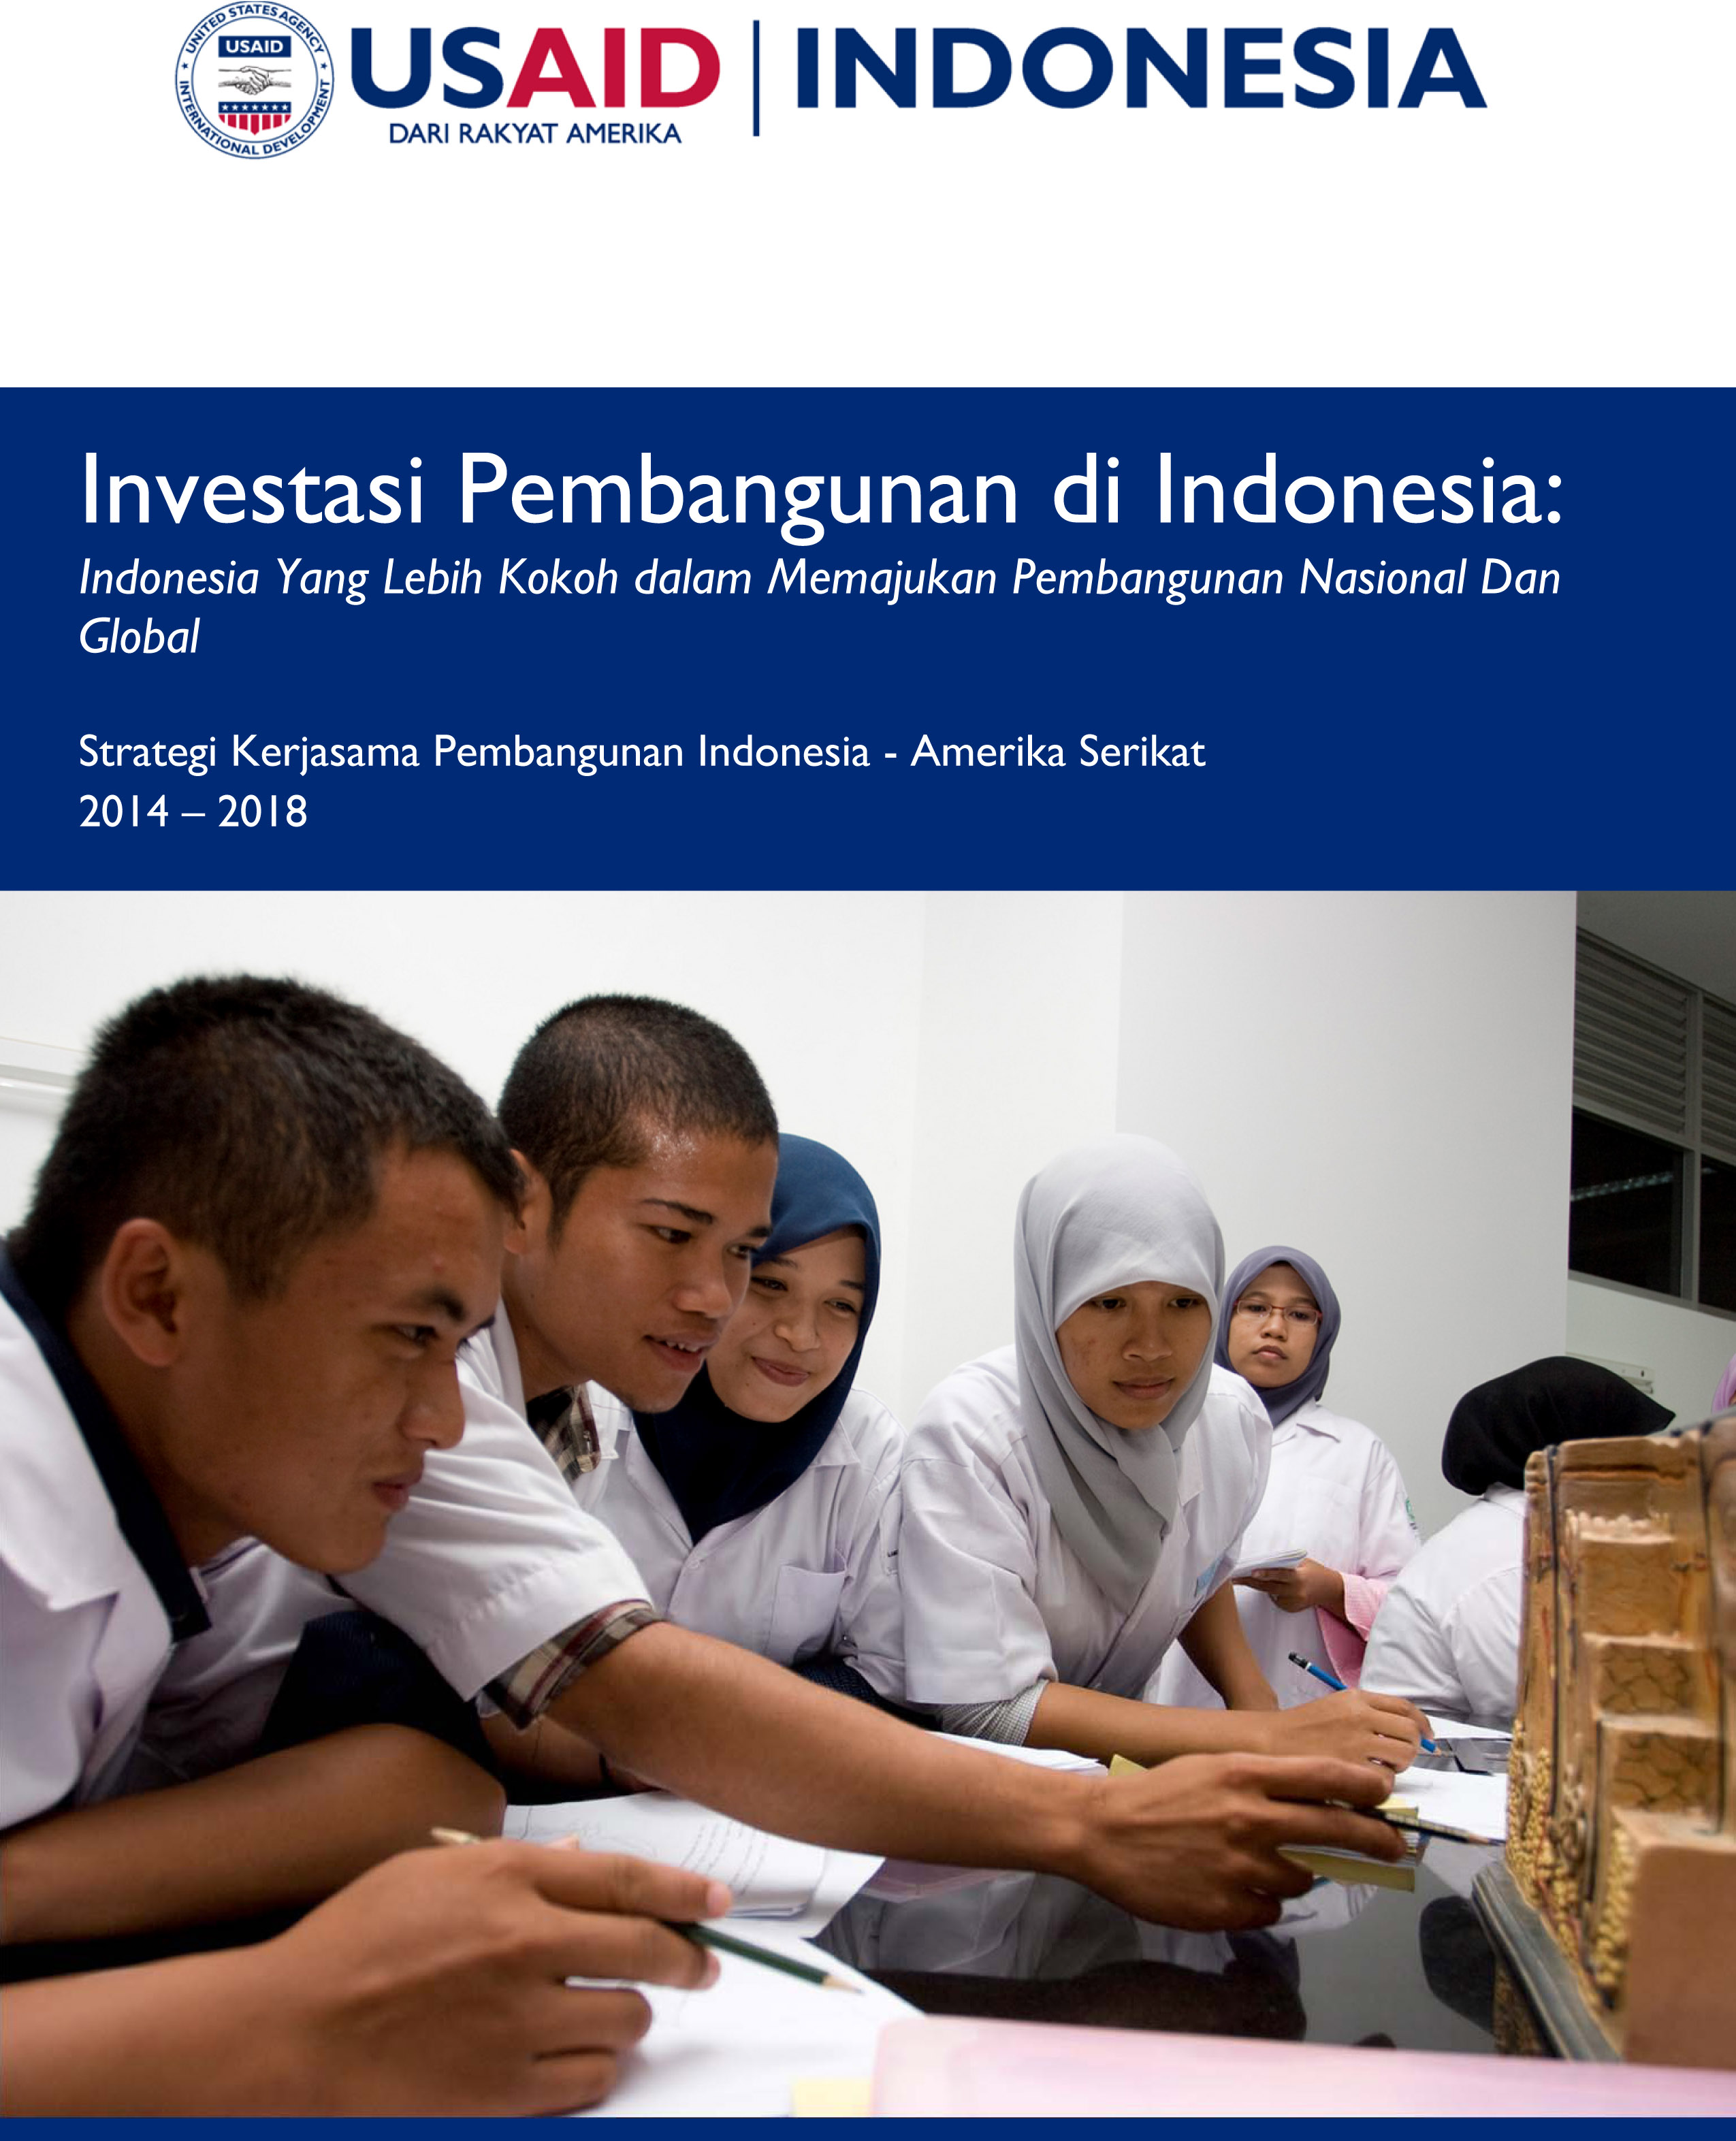 Strategi Kerjasama Pembangunan Indonesia - Amerika Serikat 2014-2018